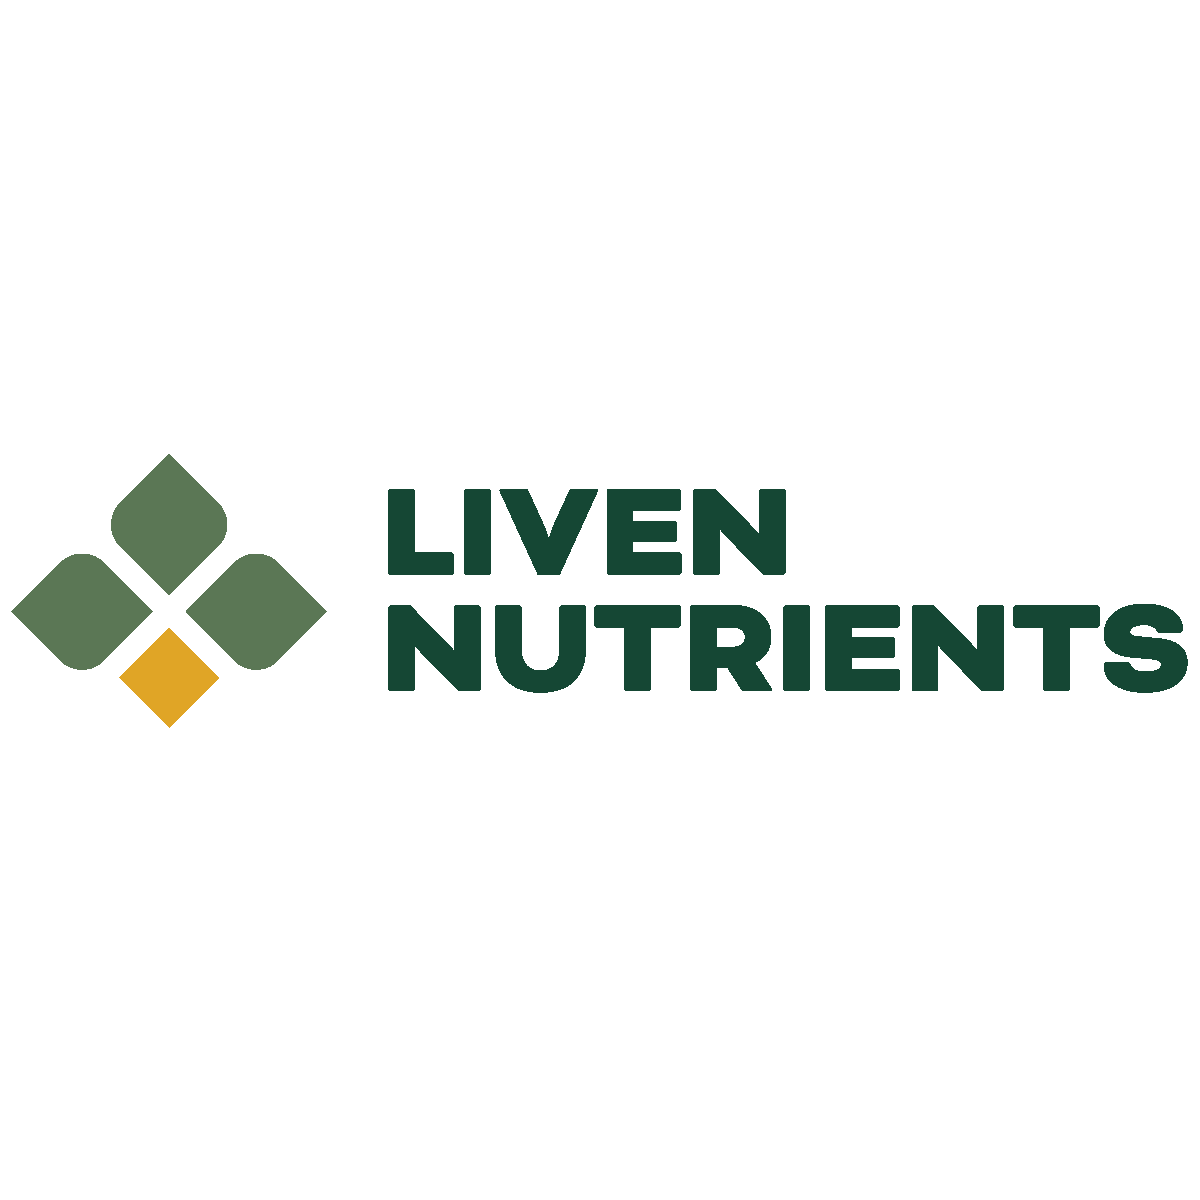 Liven Nutrients Pte. Ltd. logo